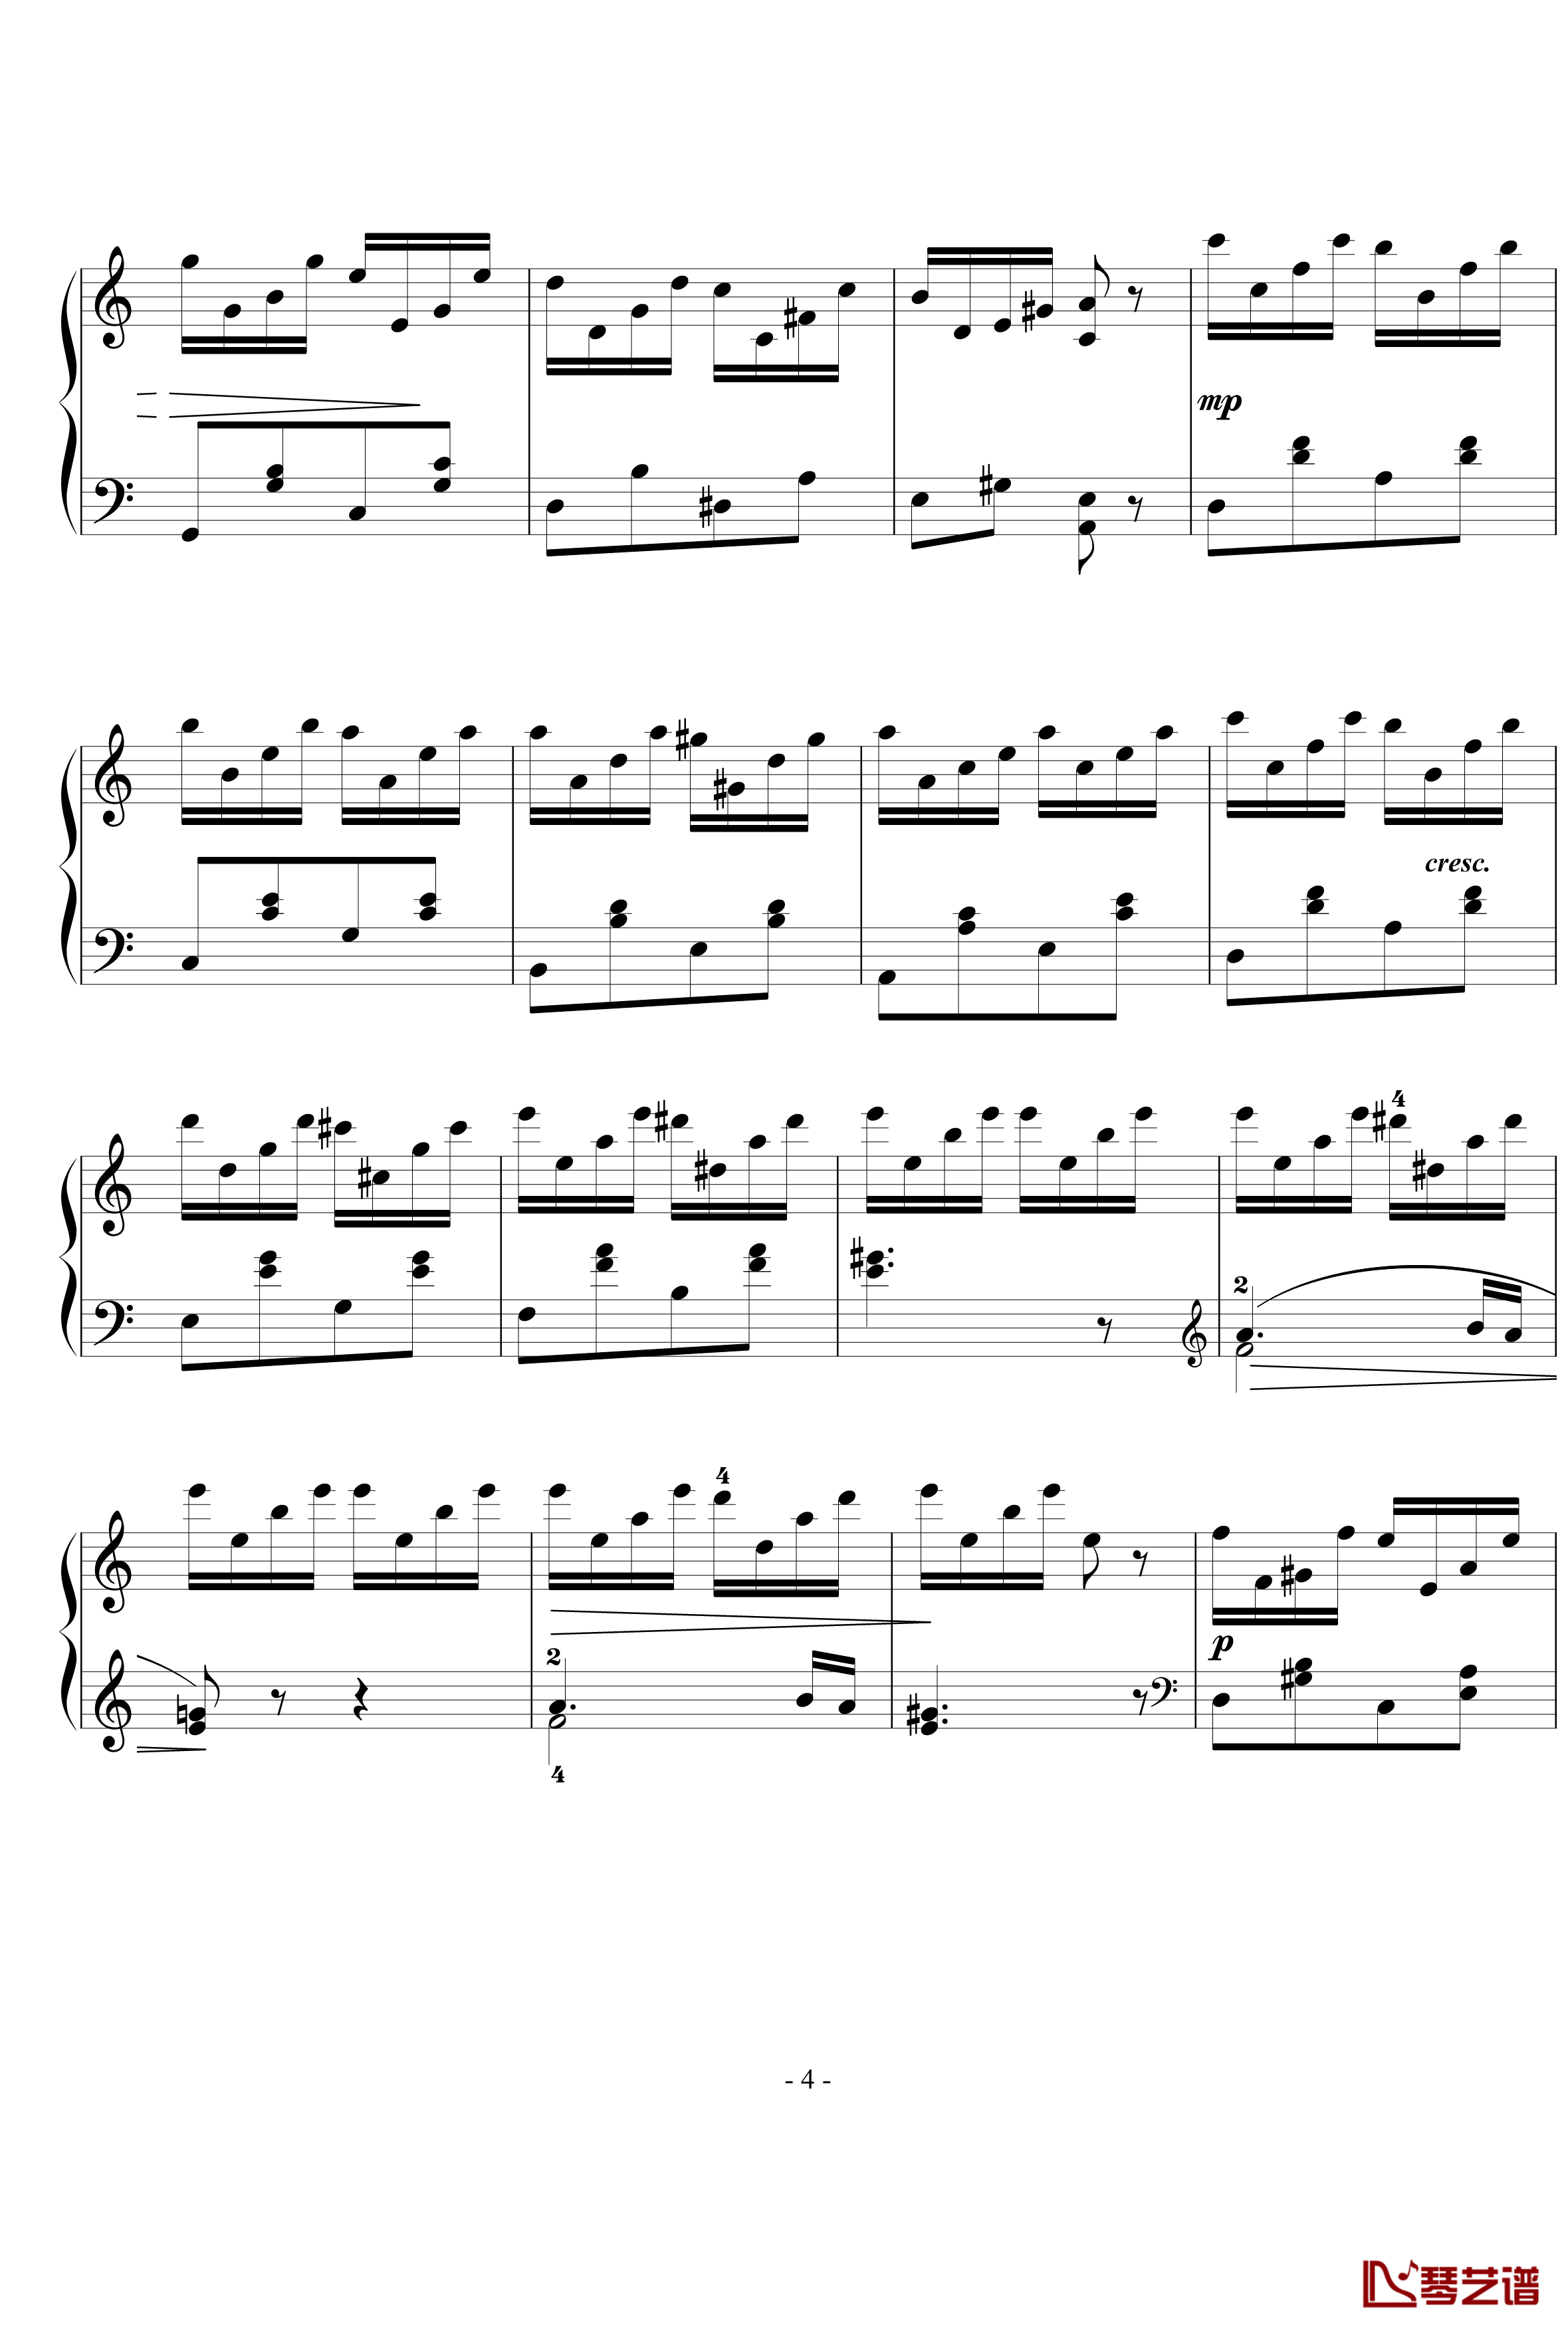 练习曲钢琴谱-西贝柳斯4